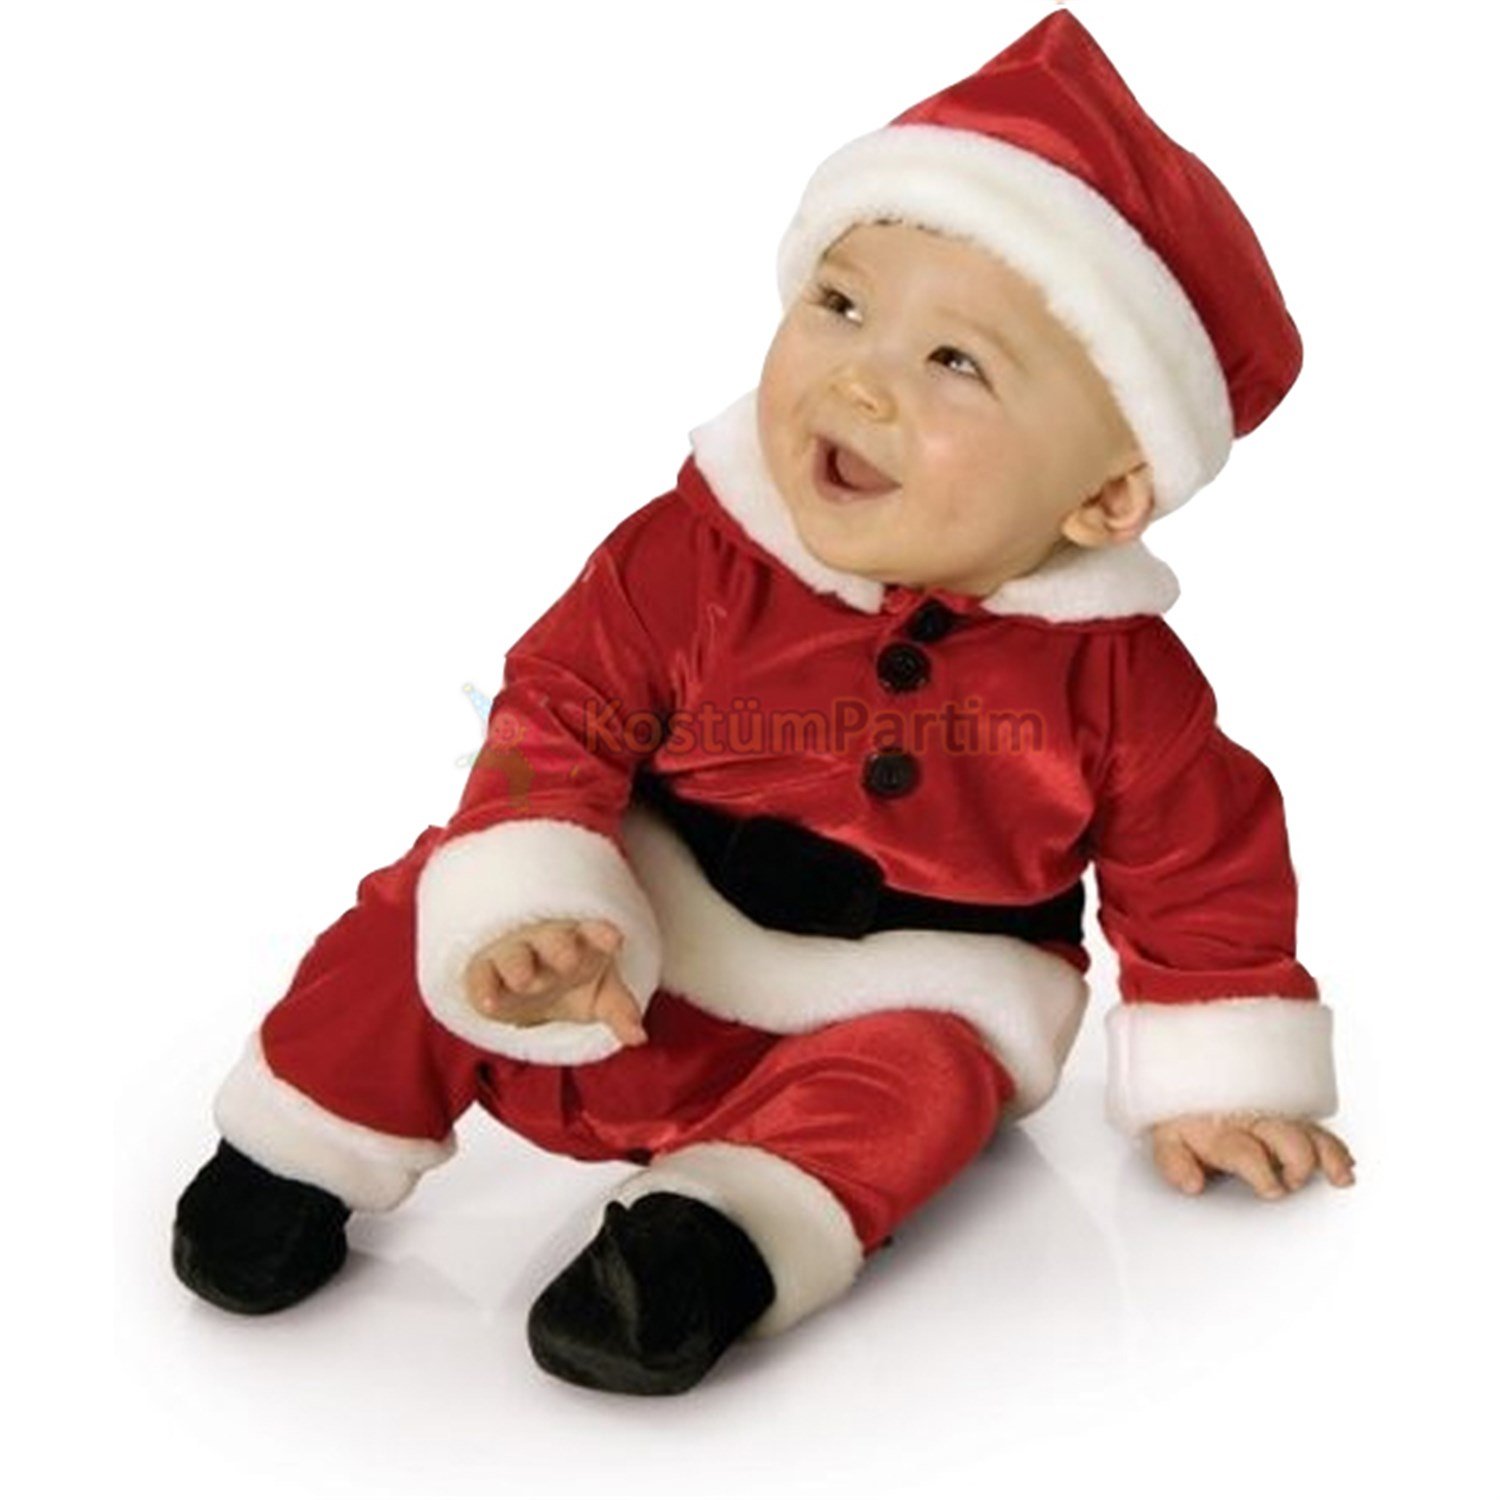 Bebekler için Noel Baba Kıyafeti, Yılbaşı Kostümleri - KostümPartim®